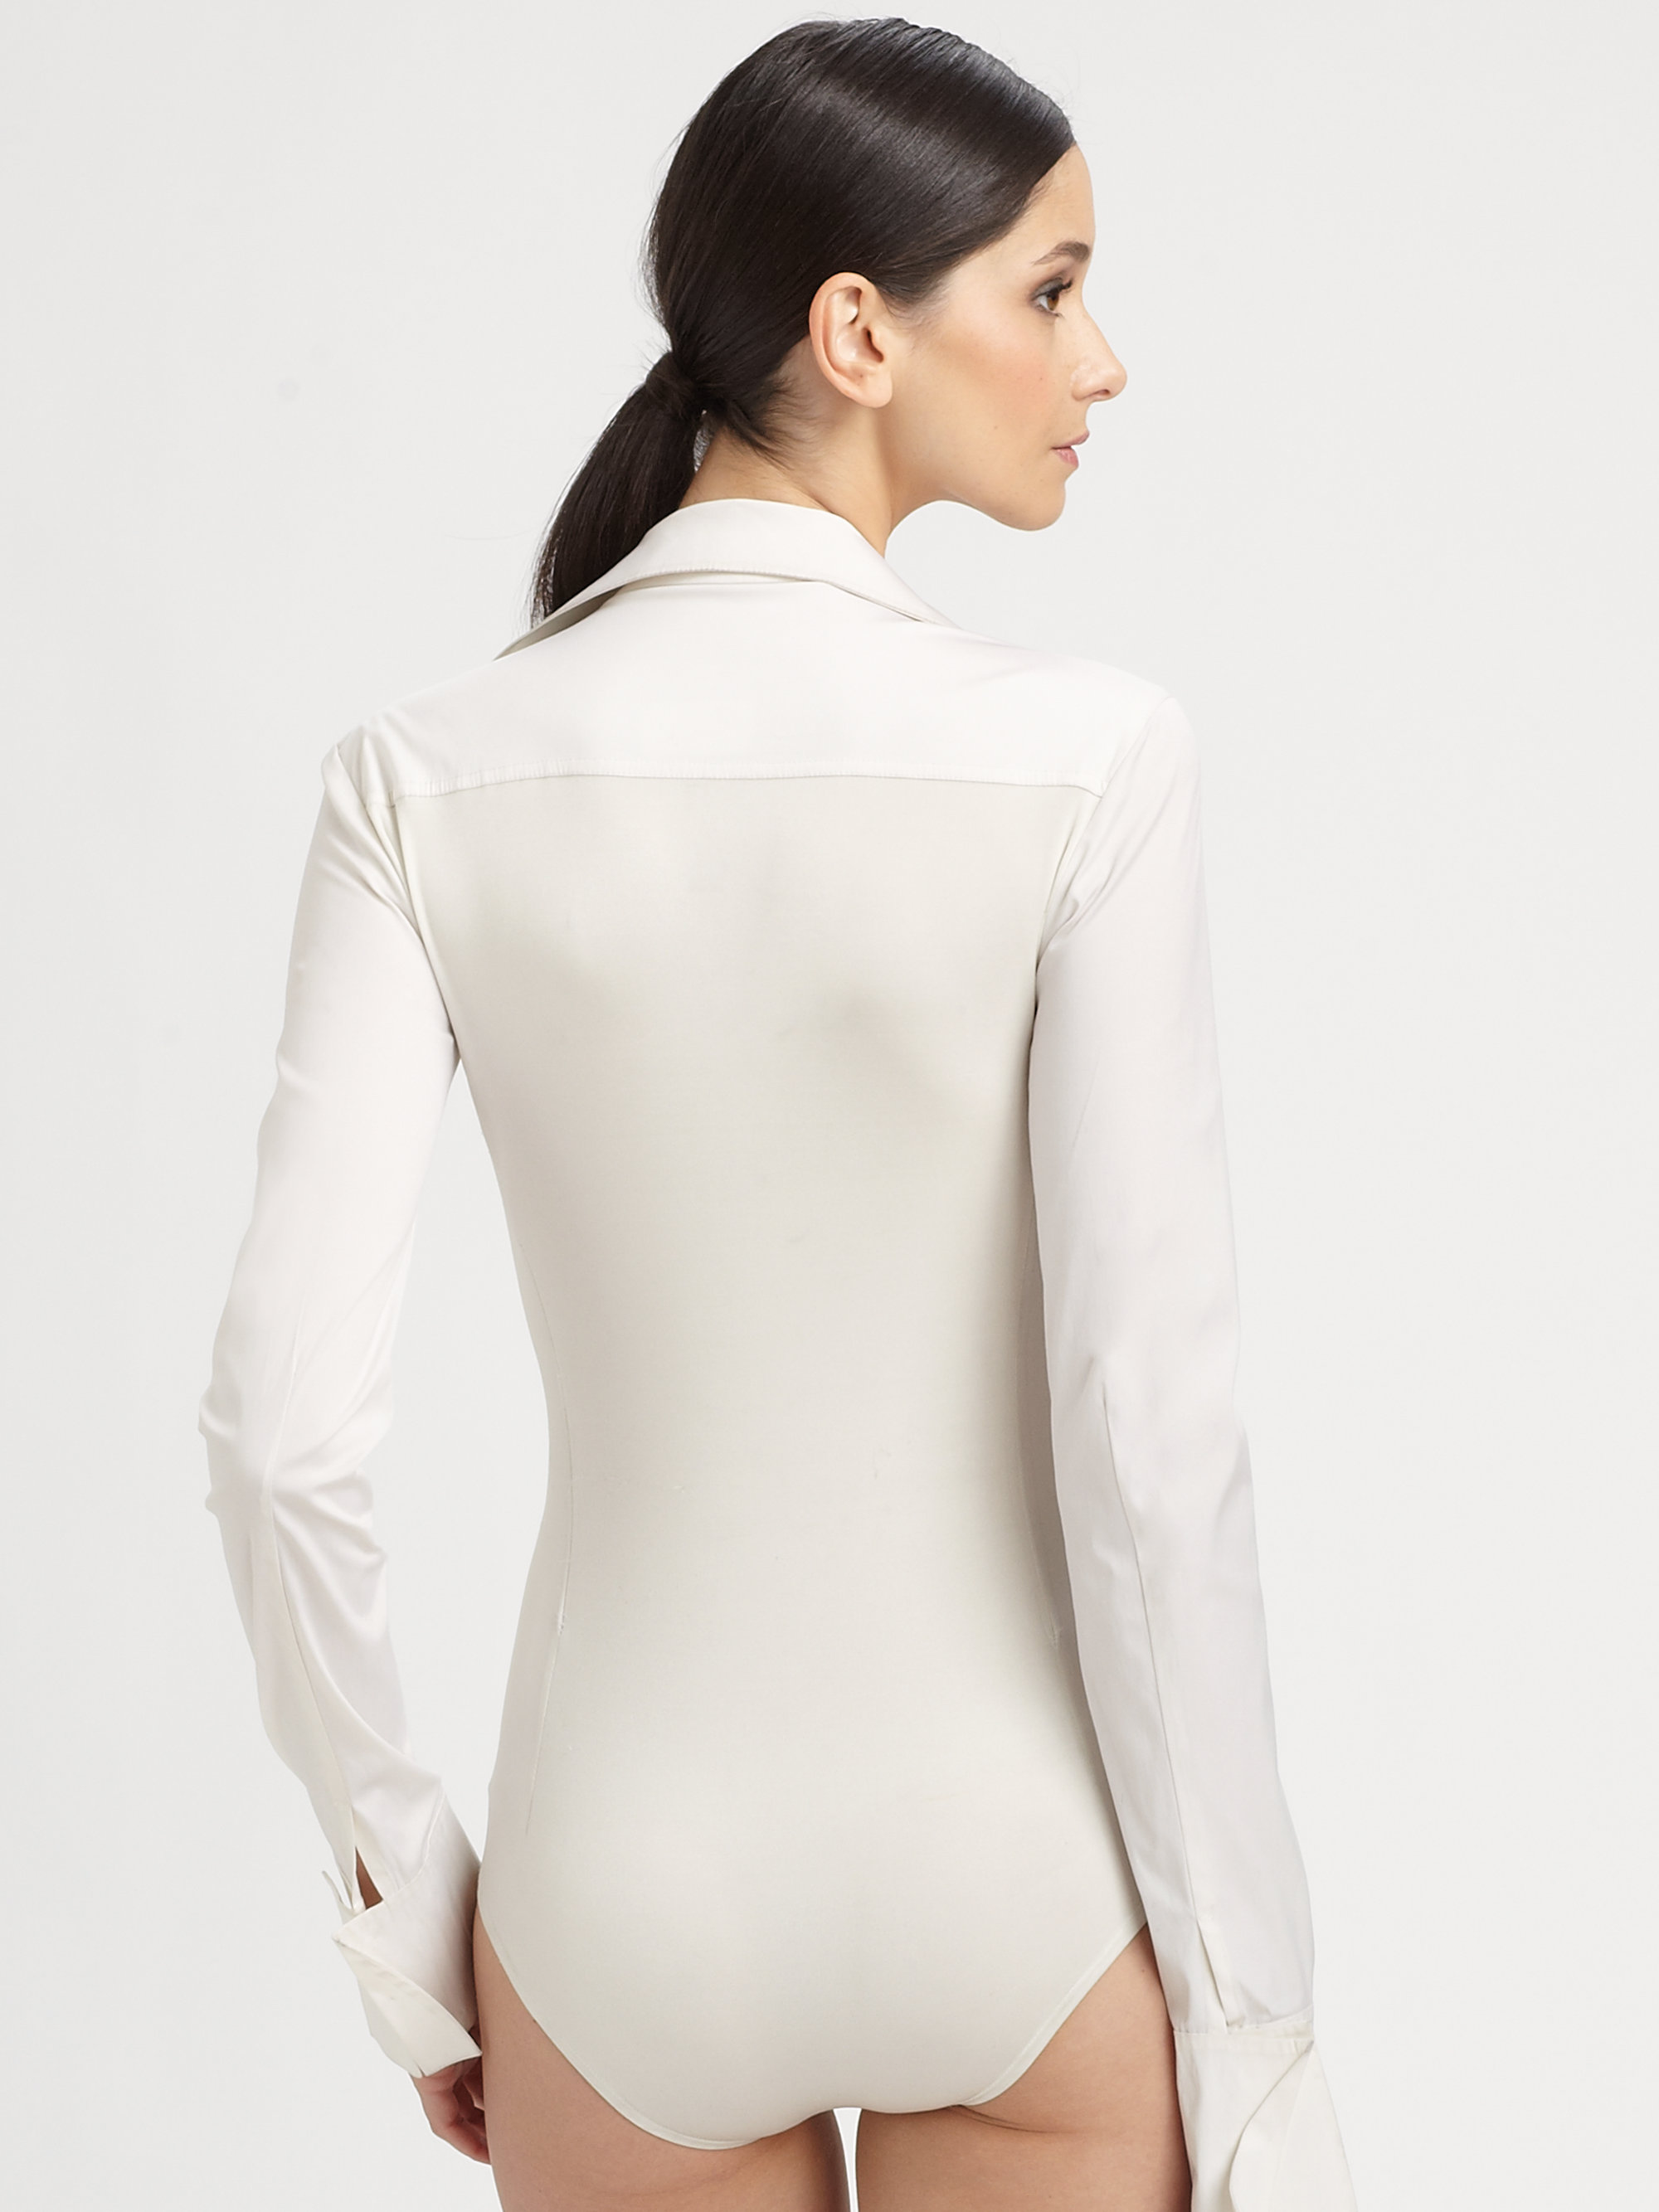 Donna Karan Collared Bodysuit in Ivory (White) - Lyst